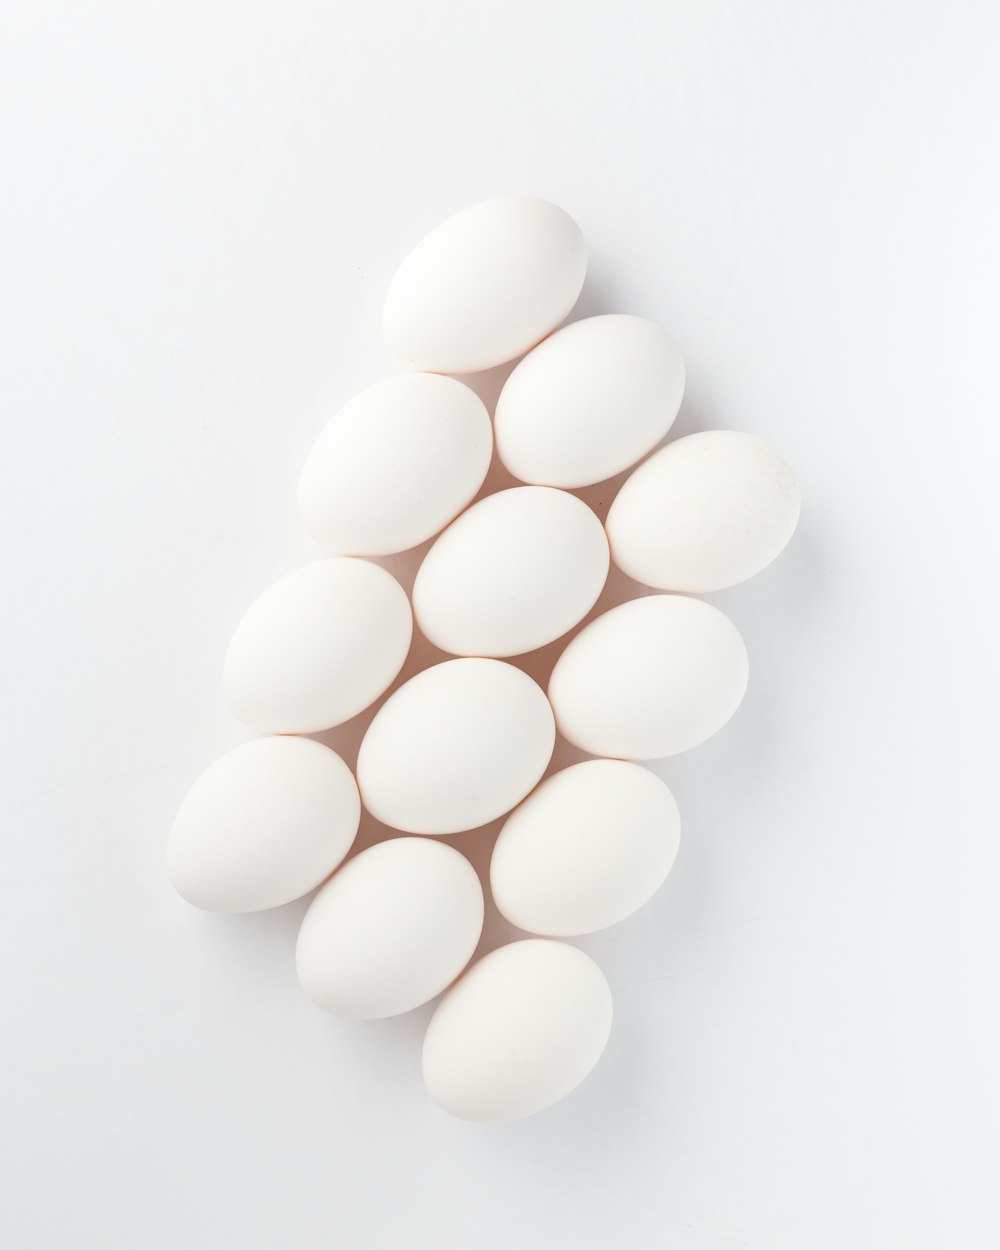 Zwölf weiße Eier auf weißer Oberfläche